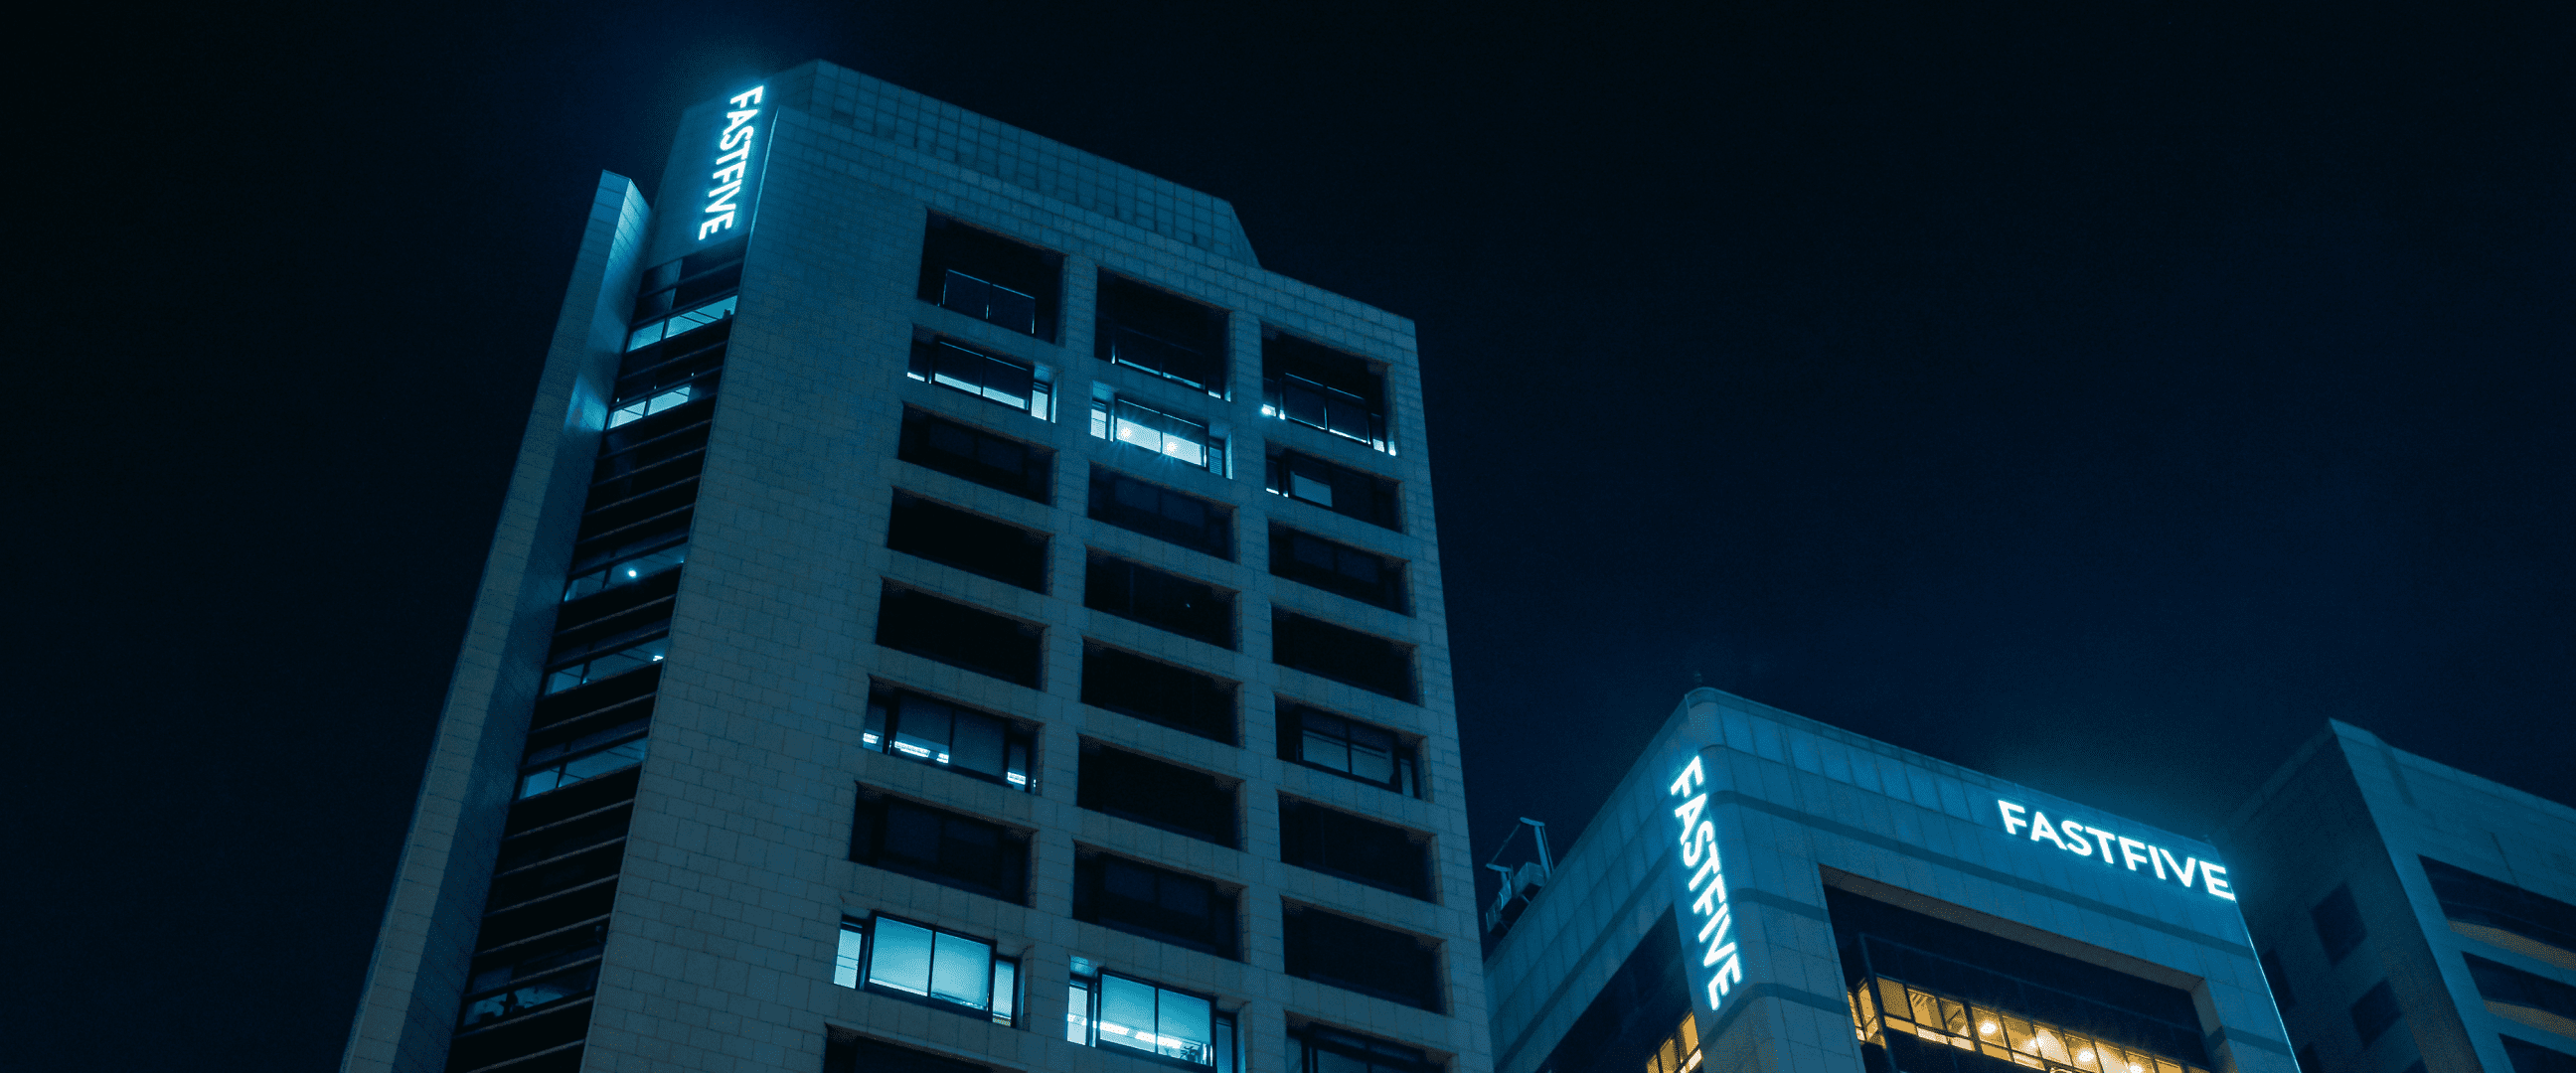 늦은 밤 사무실에 불이 켜져 있는 fastfive 빌딩